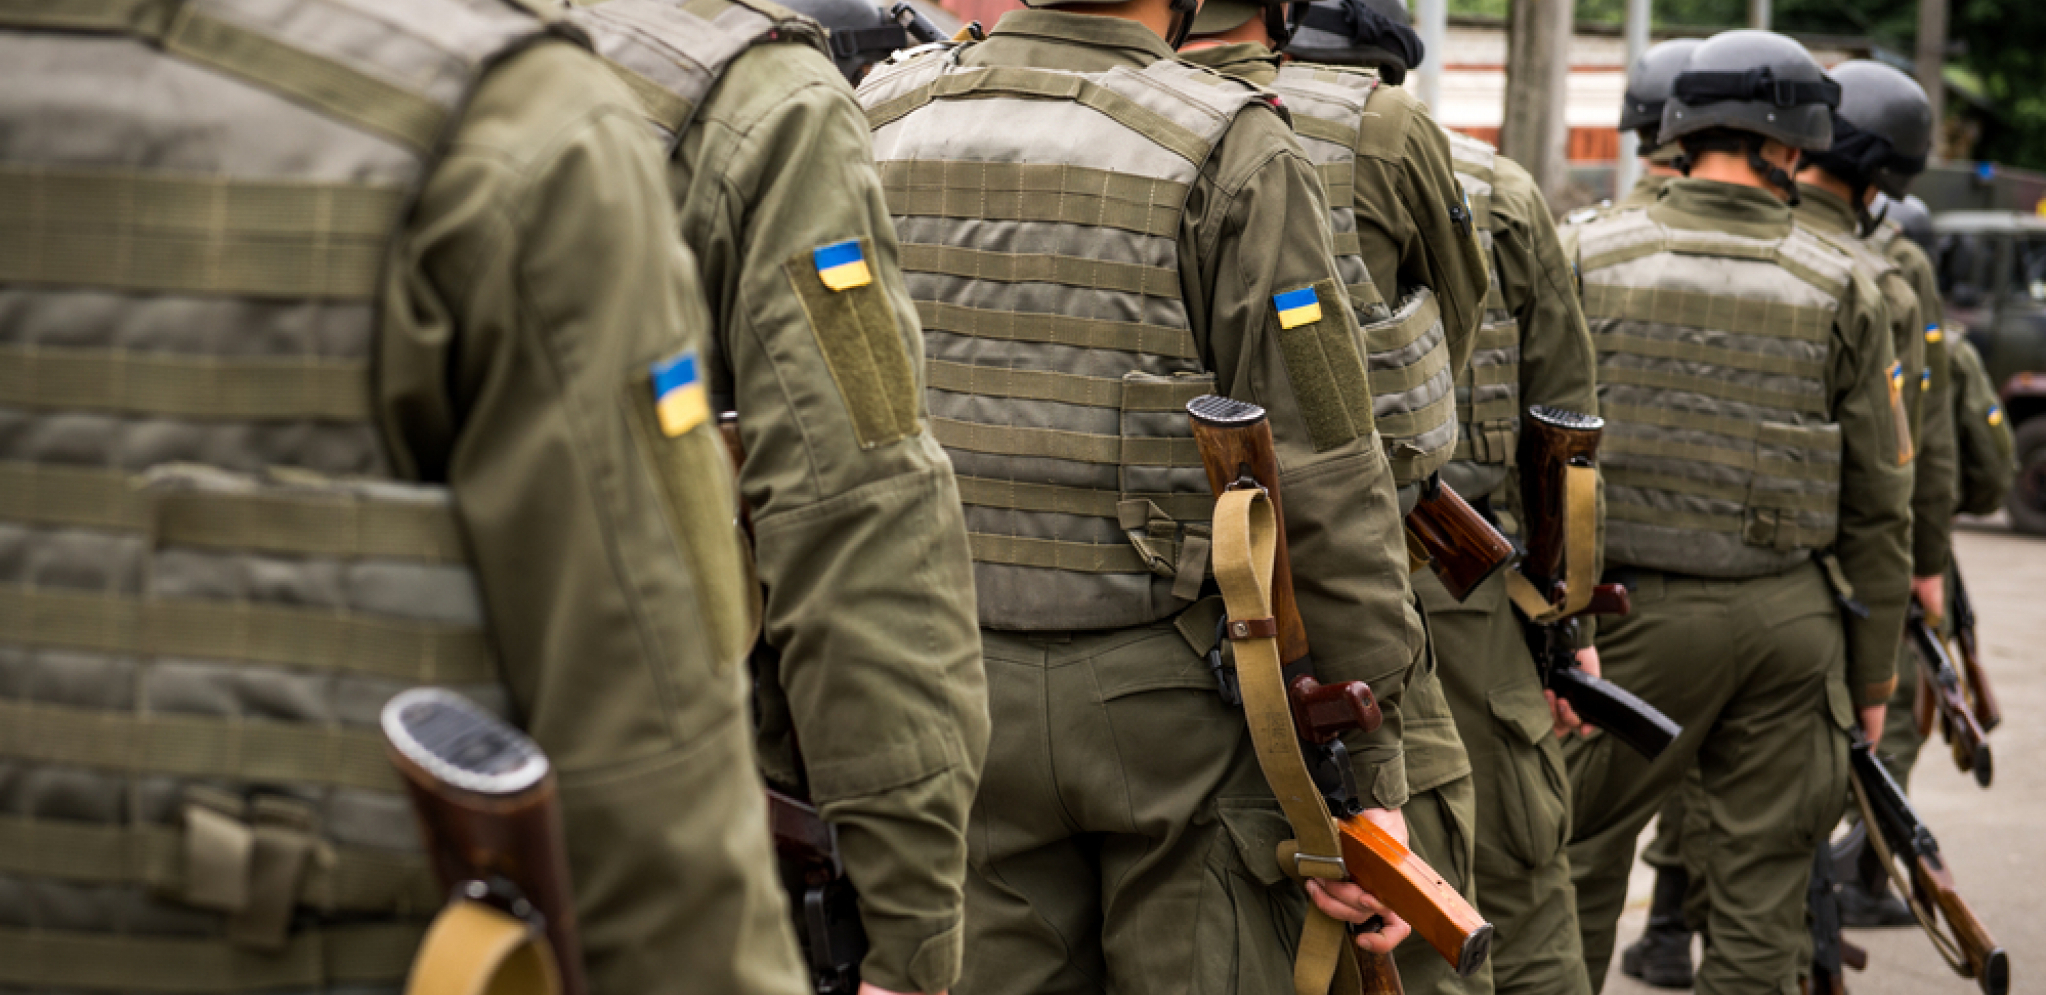 "PRESTALI SMO DA BROJIMO MRTVE!" Koliki su gubici ukrajinske vojske kod Soledara?